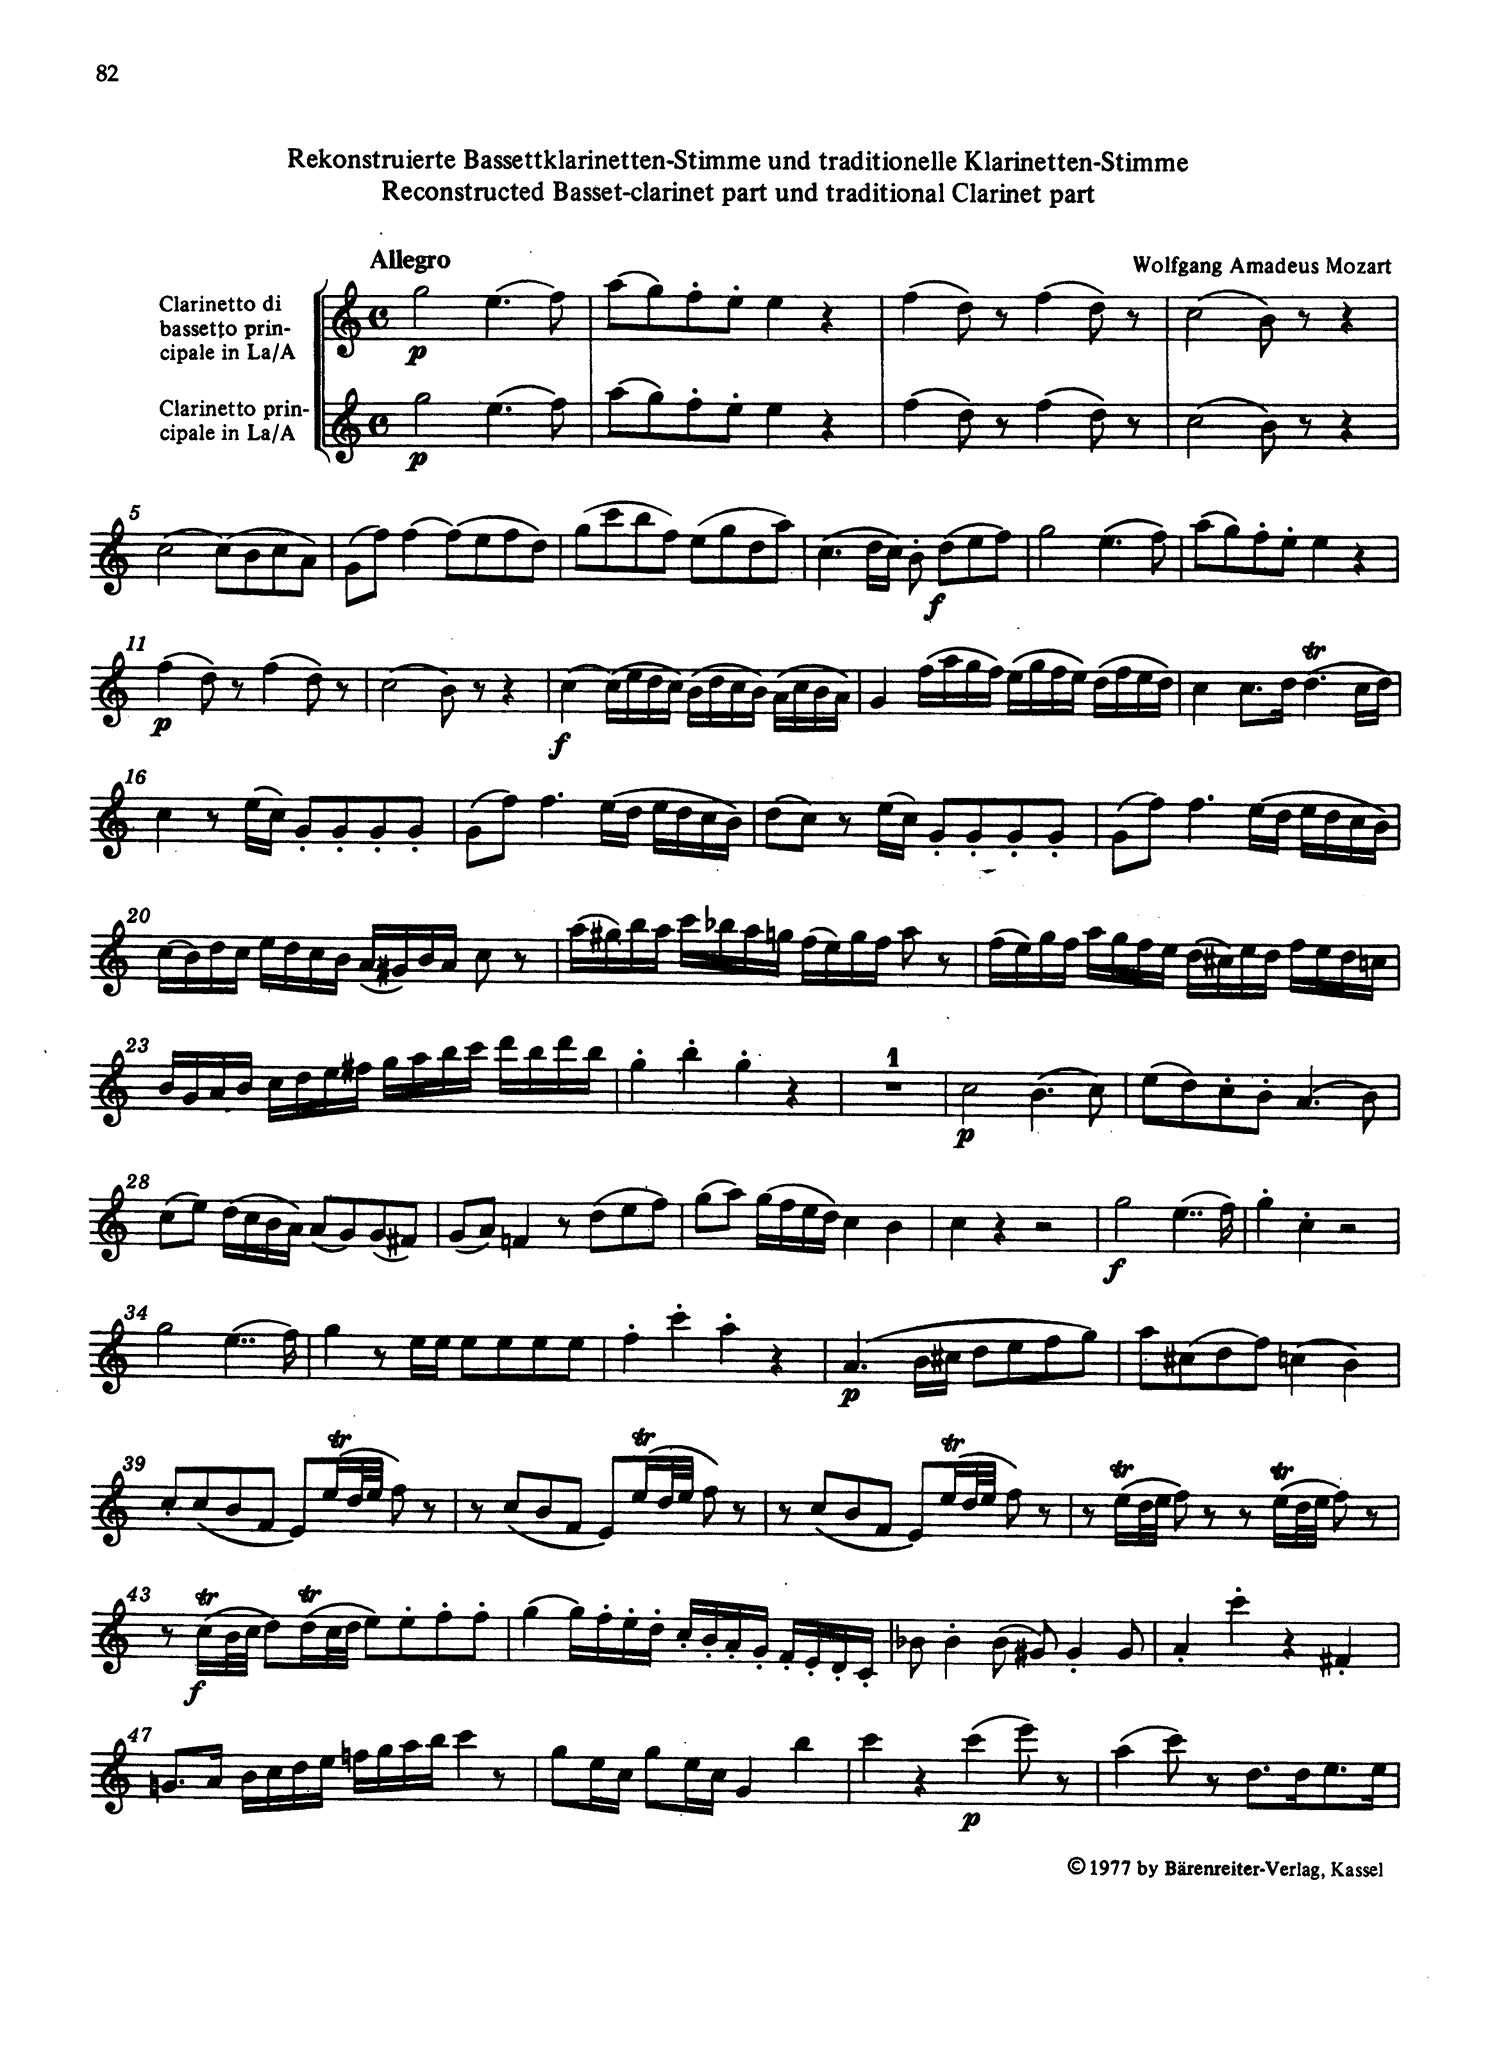 Clarinet Concerto in A Major, K. 622 Clarinet part appendix